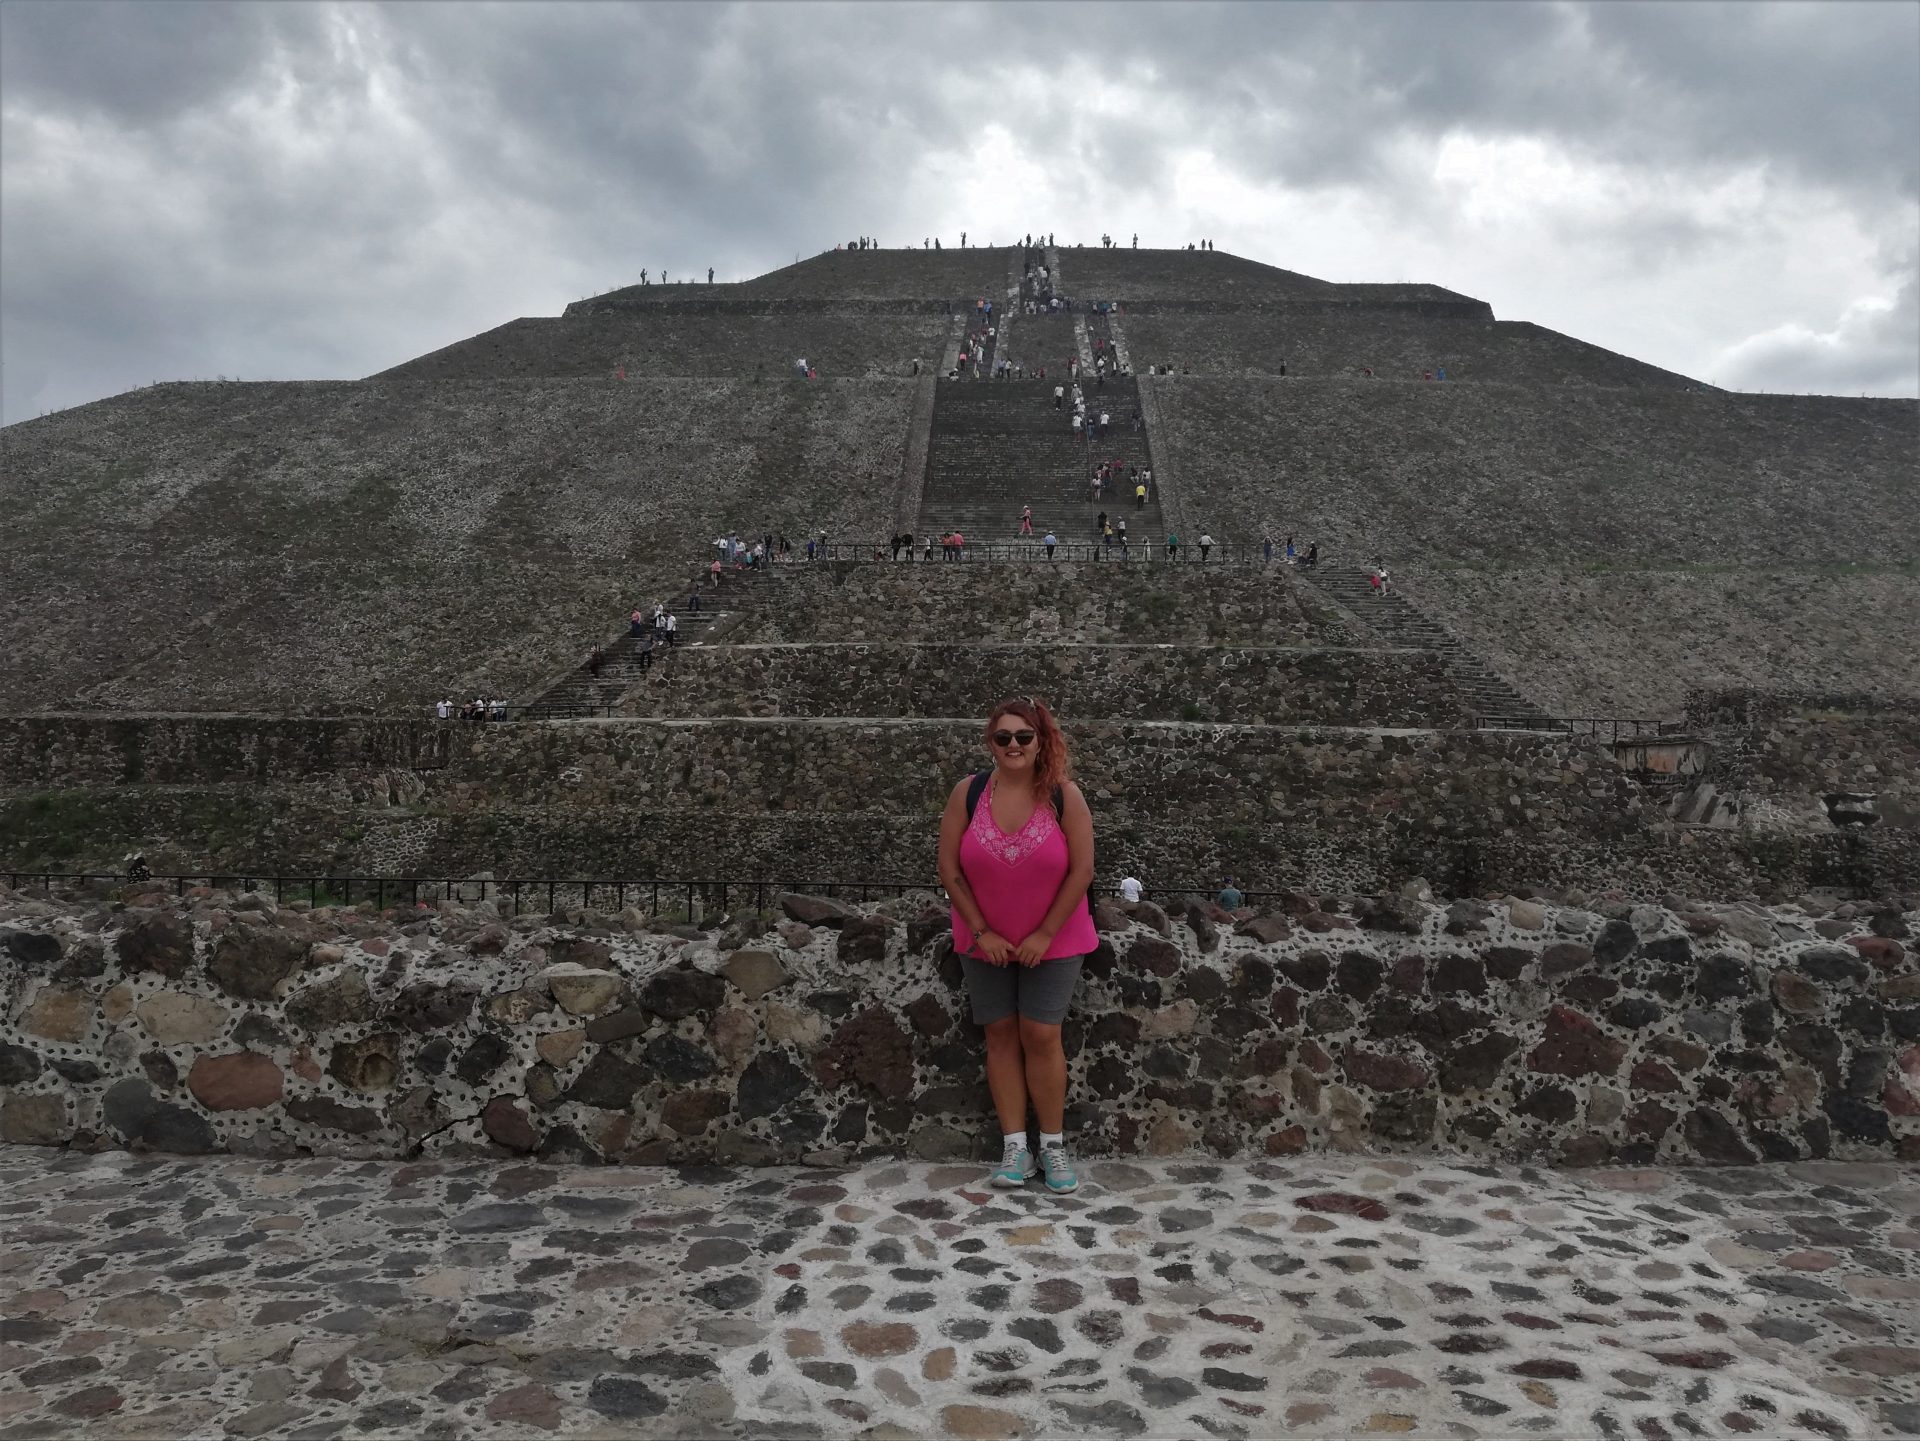 Foto con la Pirámide del Sol de Teotihuacán de fondo.